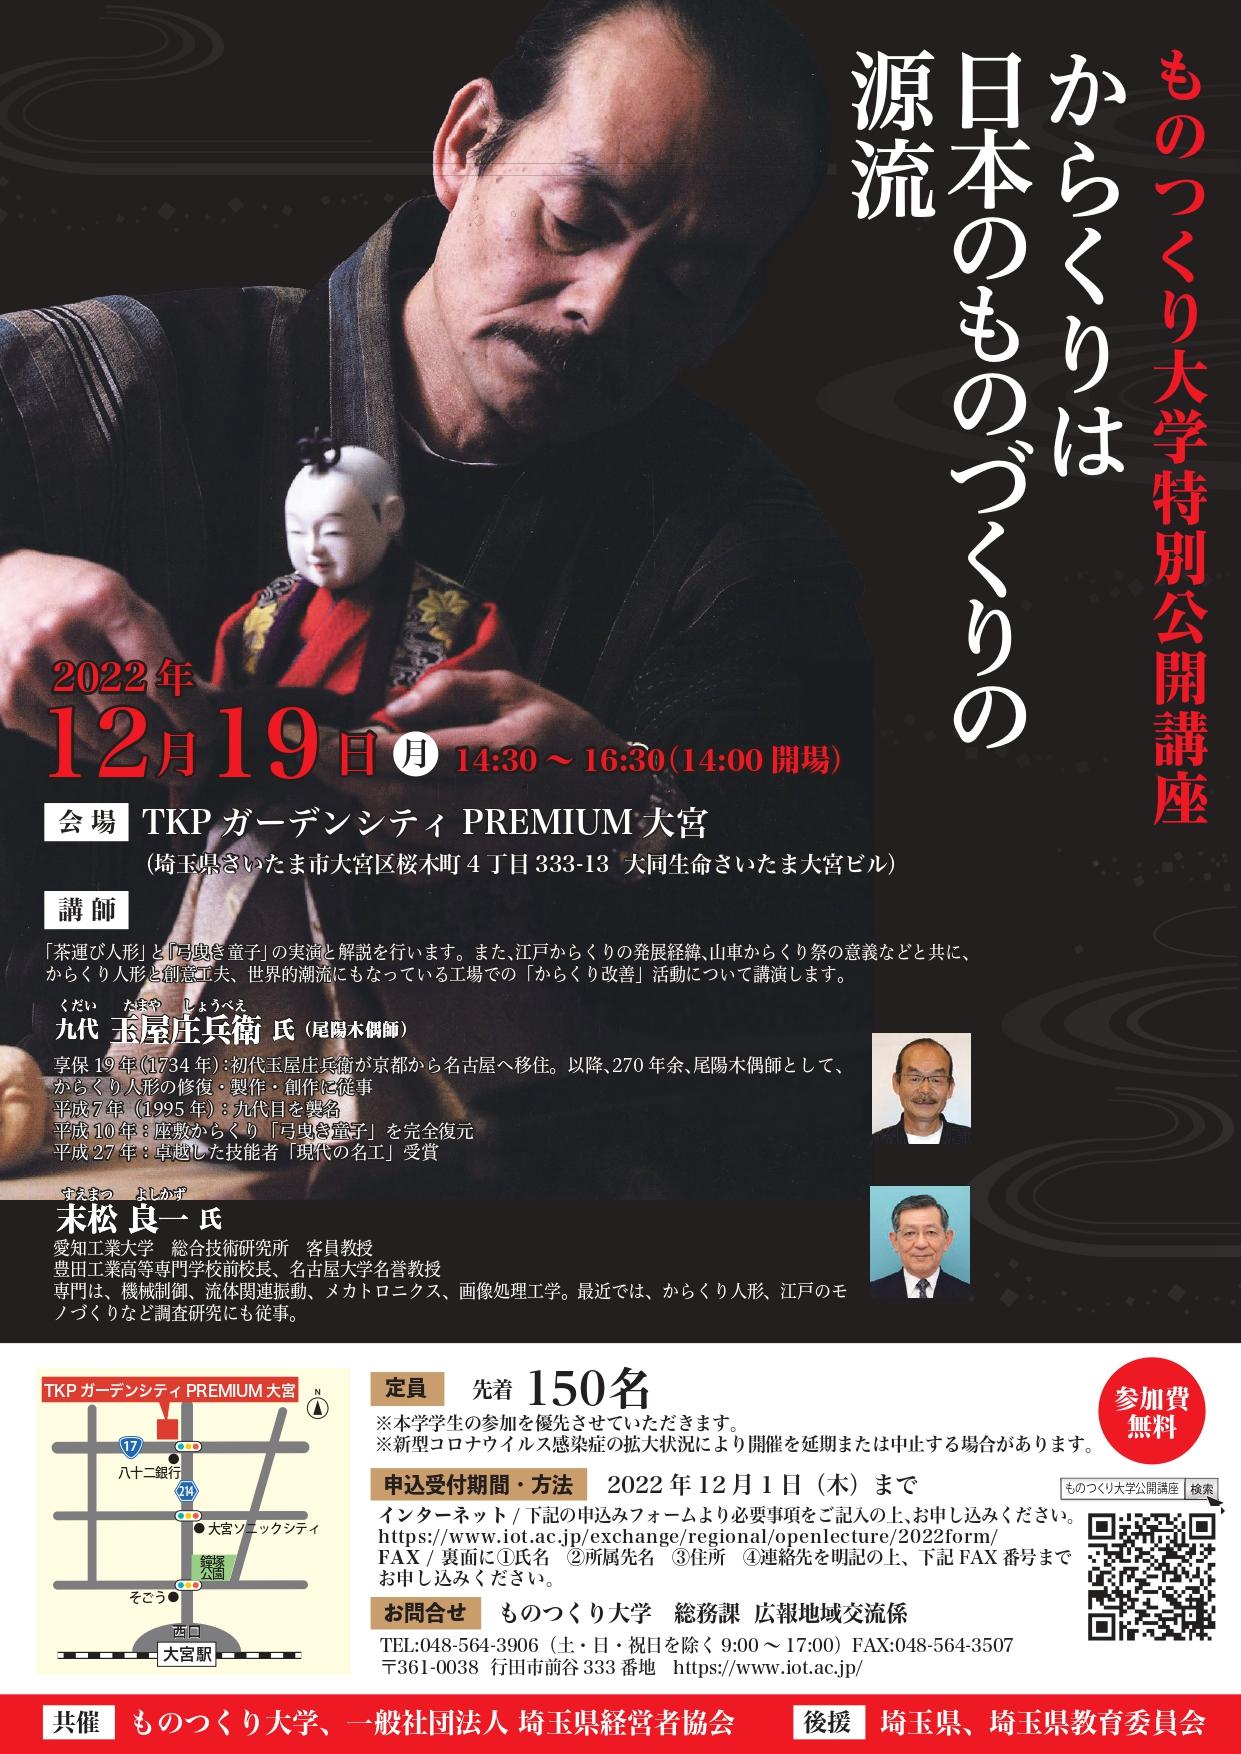 ものつくり大学は、12月19日(月)に特別公開講座「からくりは日本のものづくりの源流」を対面で開催。現代のロボットに繋がる江戸の超絶技工を楽しめます。